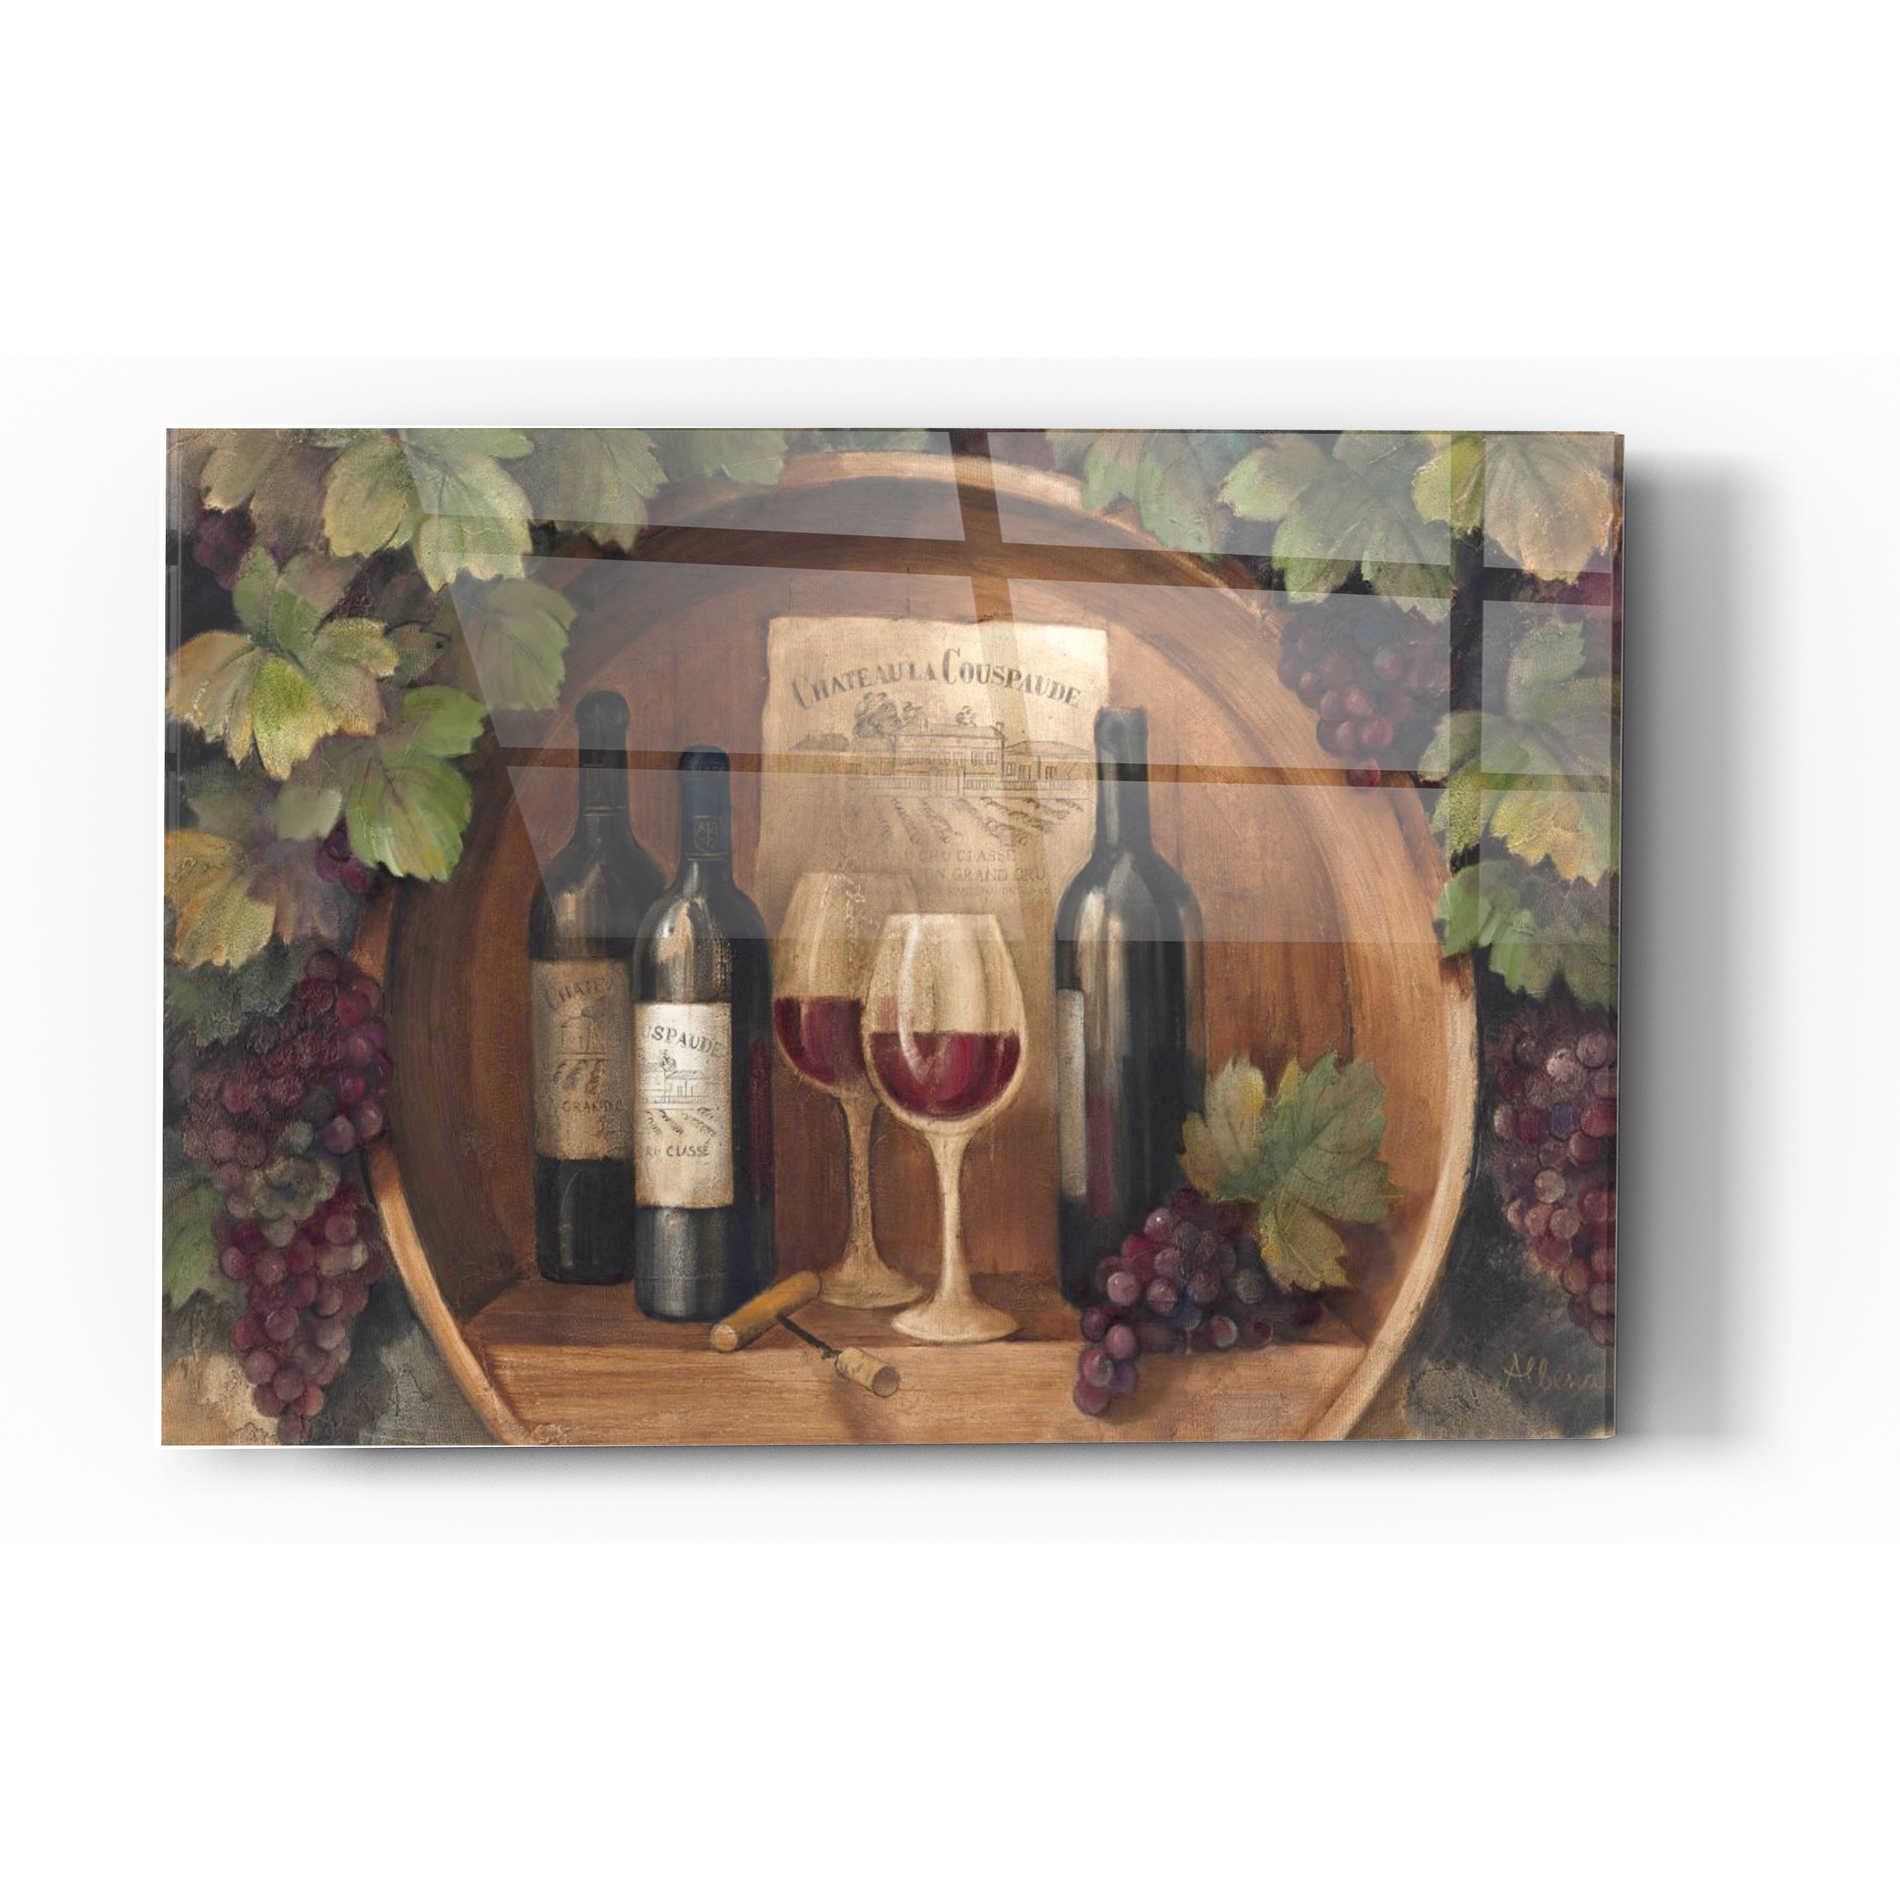 Epic Art 'At the Winery' by Albena Hristova, Acrylic Glass Wall Art,12x16